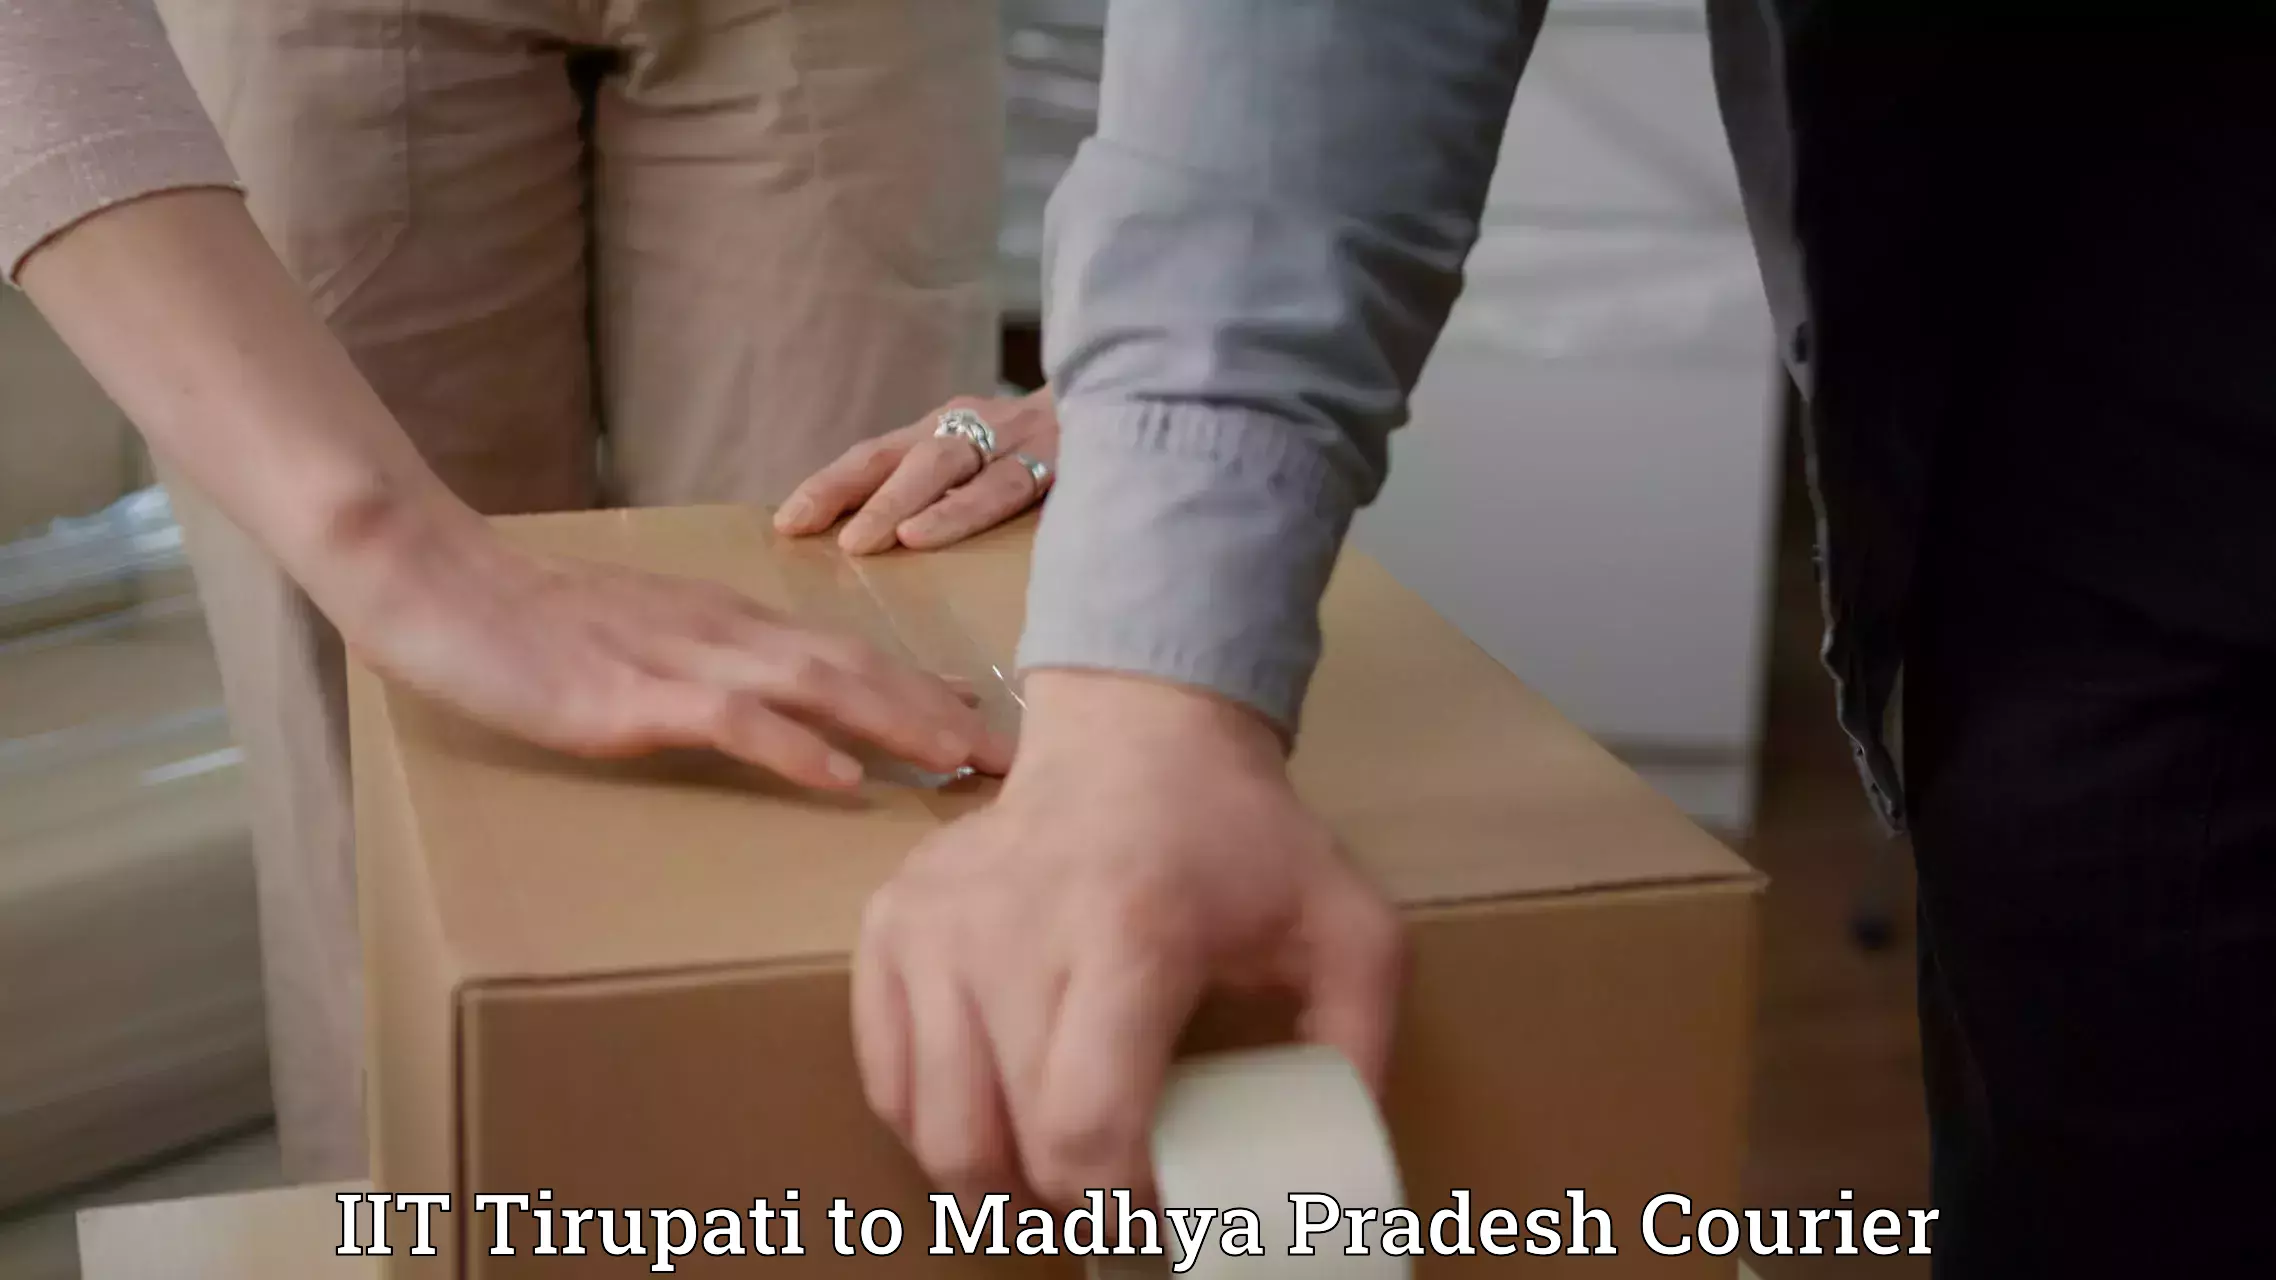 Local delivery service IIT Tirupati to Jhabua